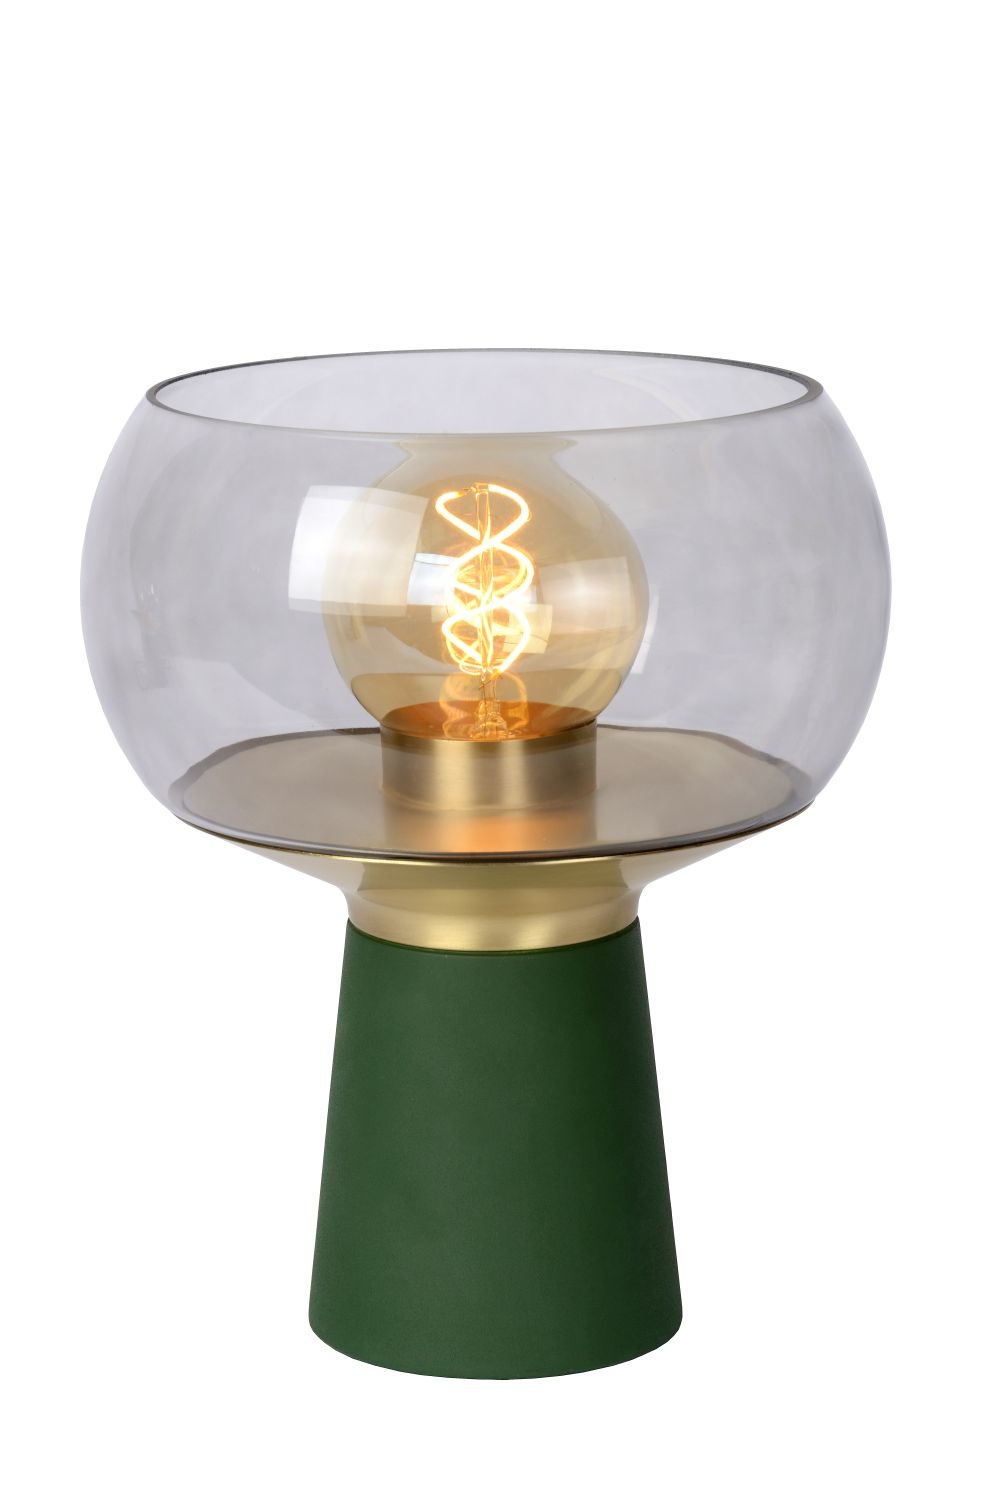 Groene tafellamp E27 met messing en design | My Planet LED